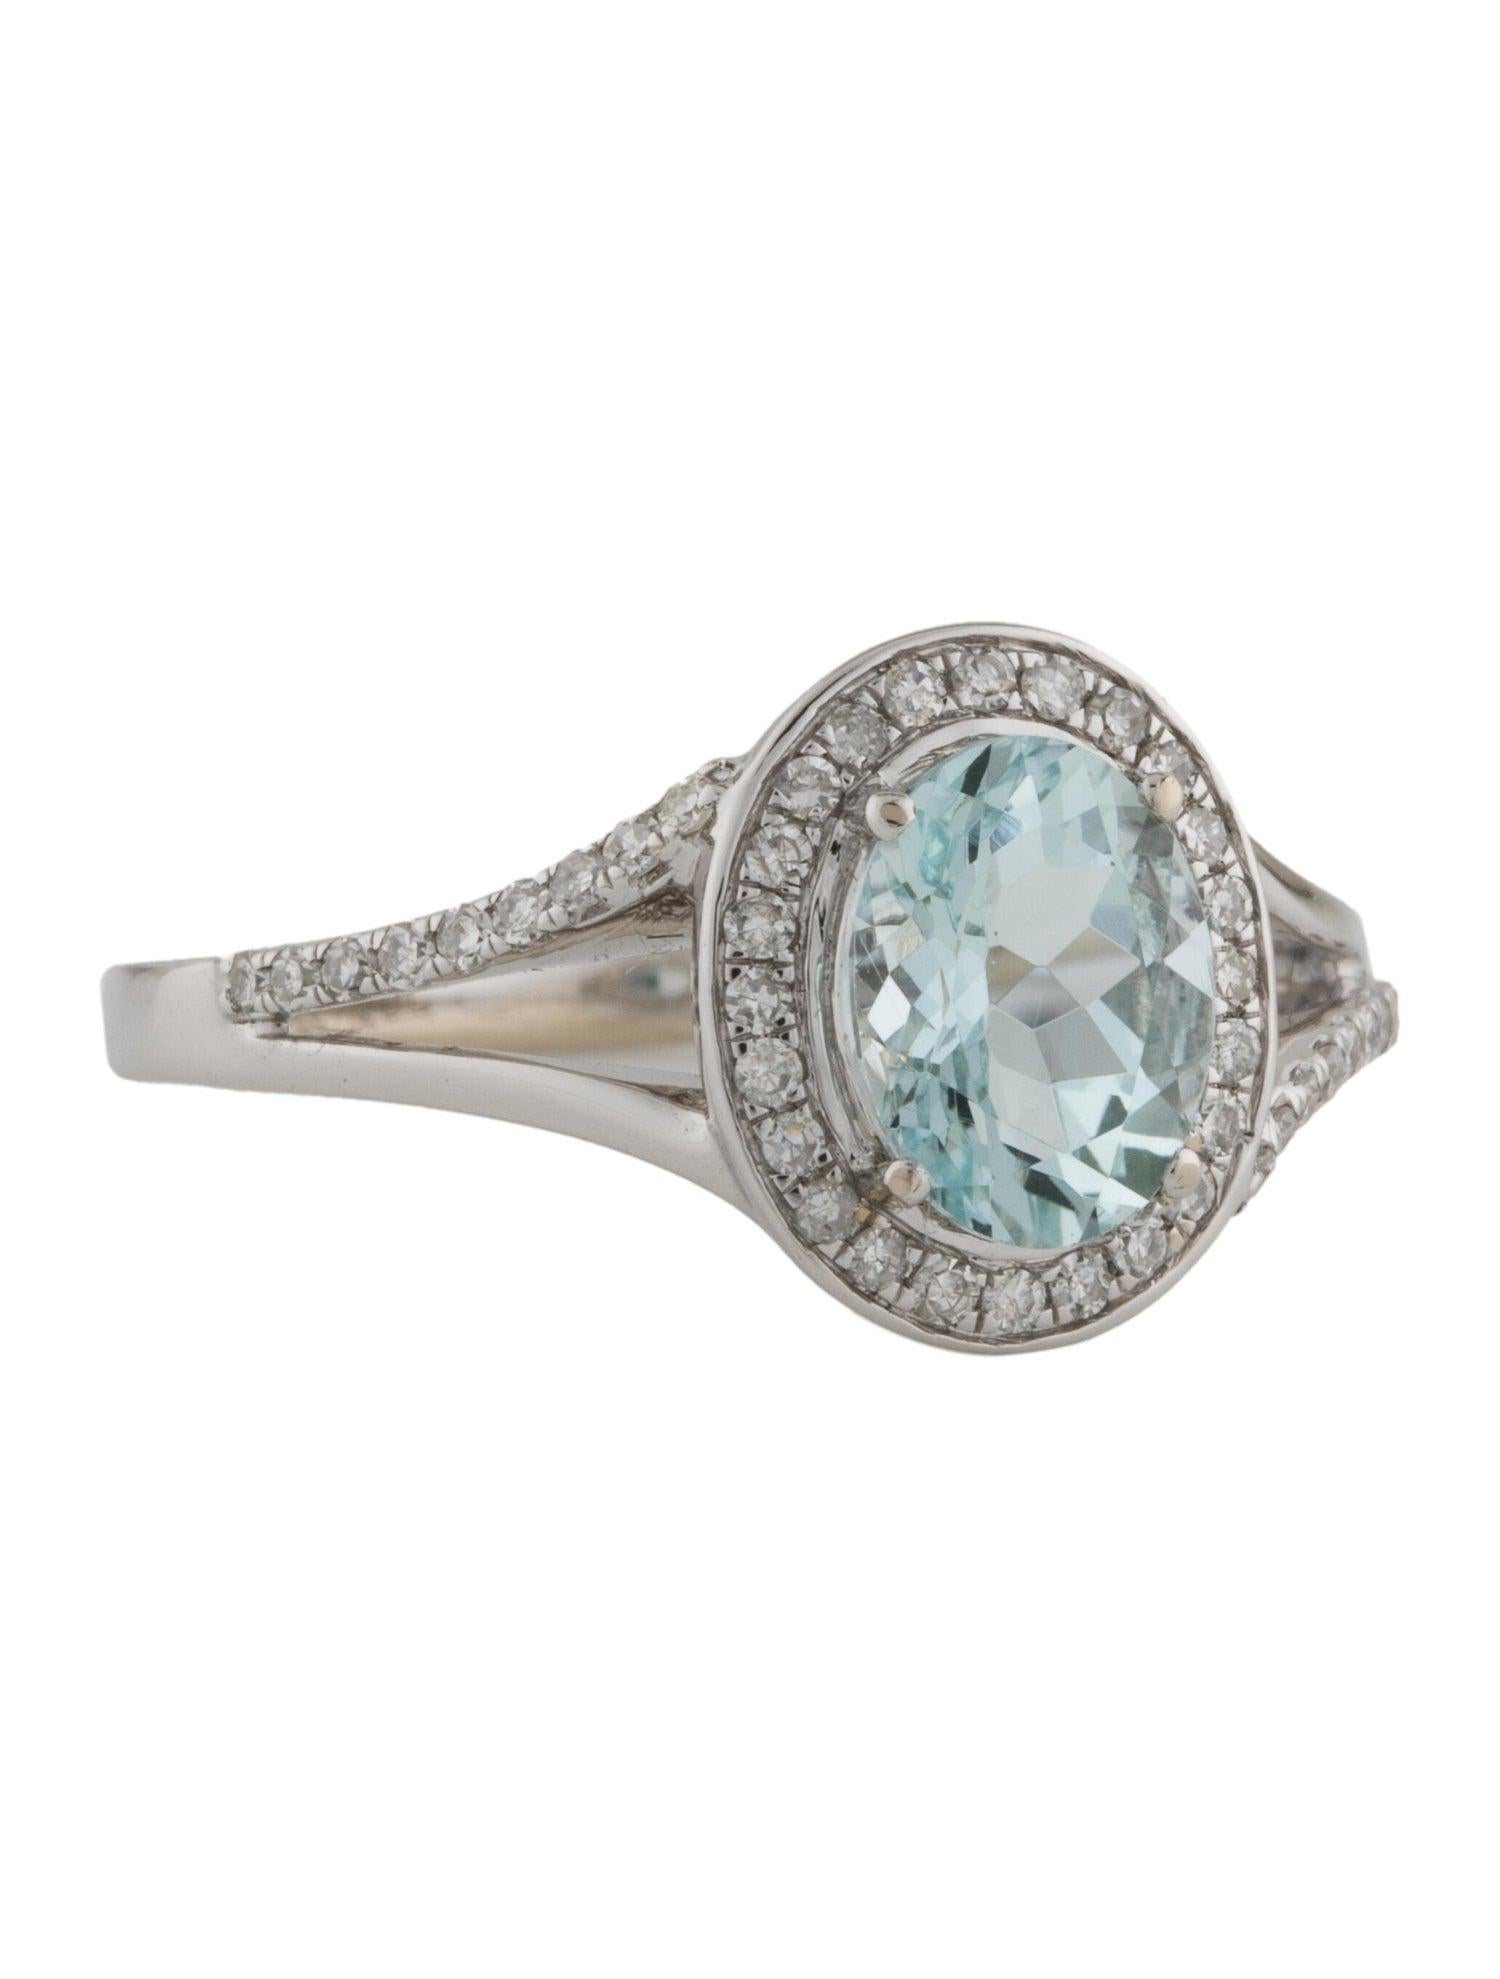 Brilliant Cut Exquisite 14K Diamond & Aquamarine Cocktail Ring, Size 7 - Timeless & Elegant